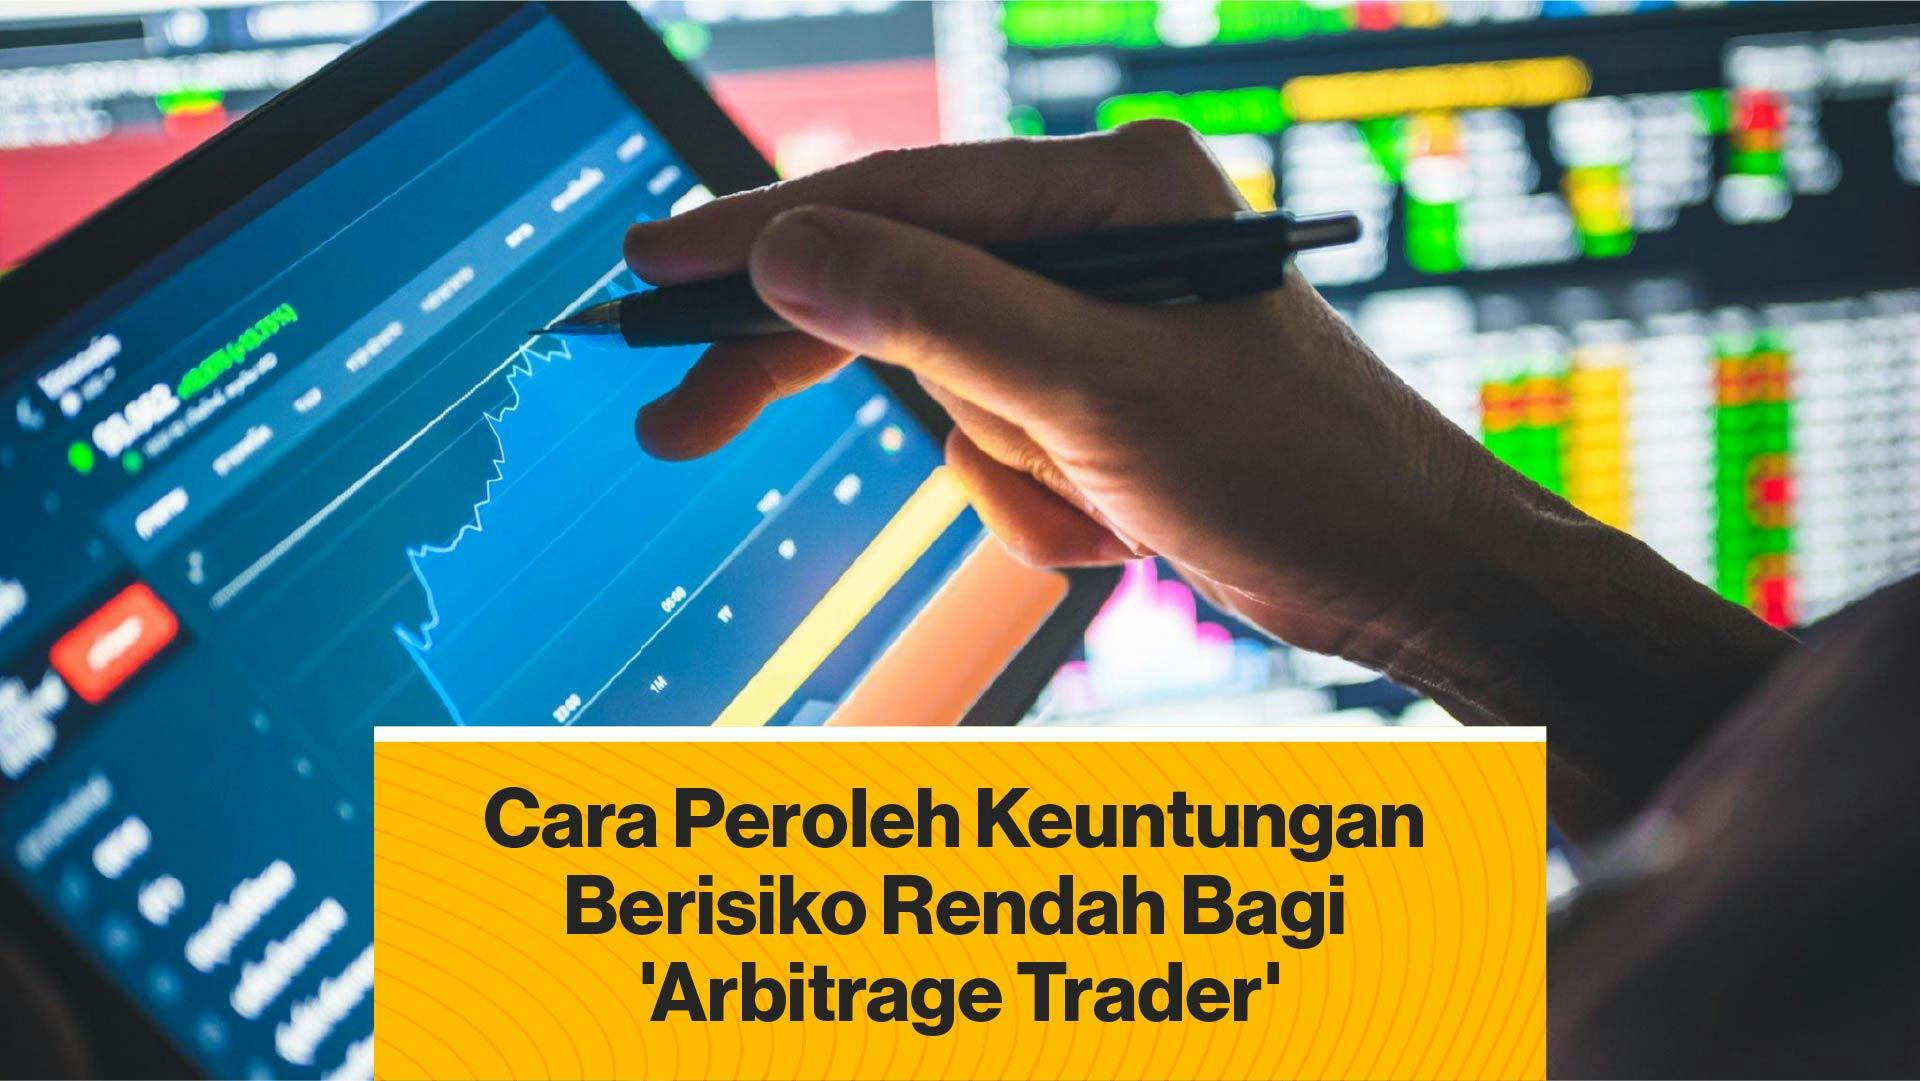 Ini Cara Memperoleh Keuntungan Berisiko Rendah bagi Para Arbitrage Trader (Coindesk Indonesia)